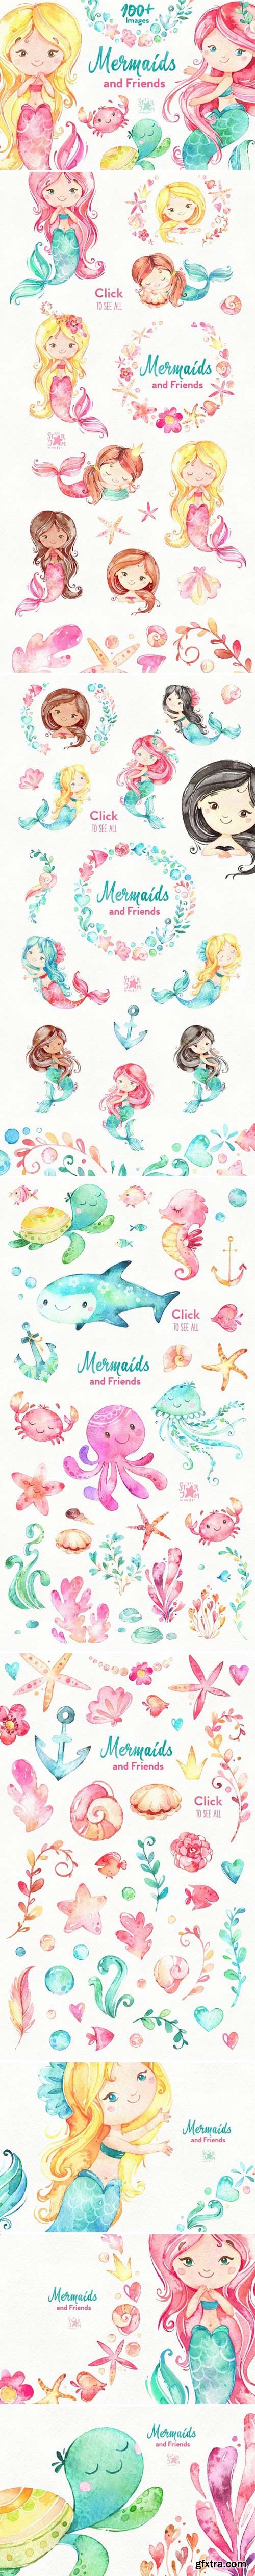 CM - Mermaids & Friends. Underwater world 1588358